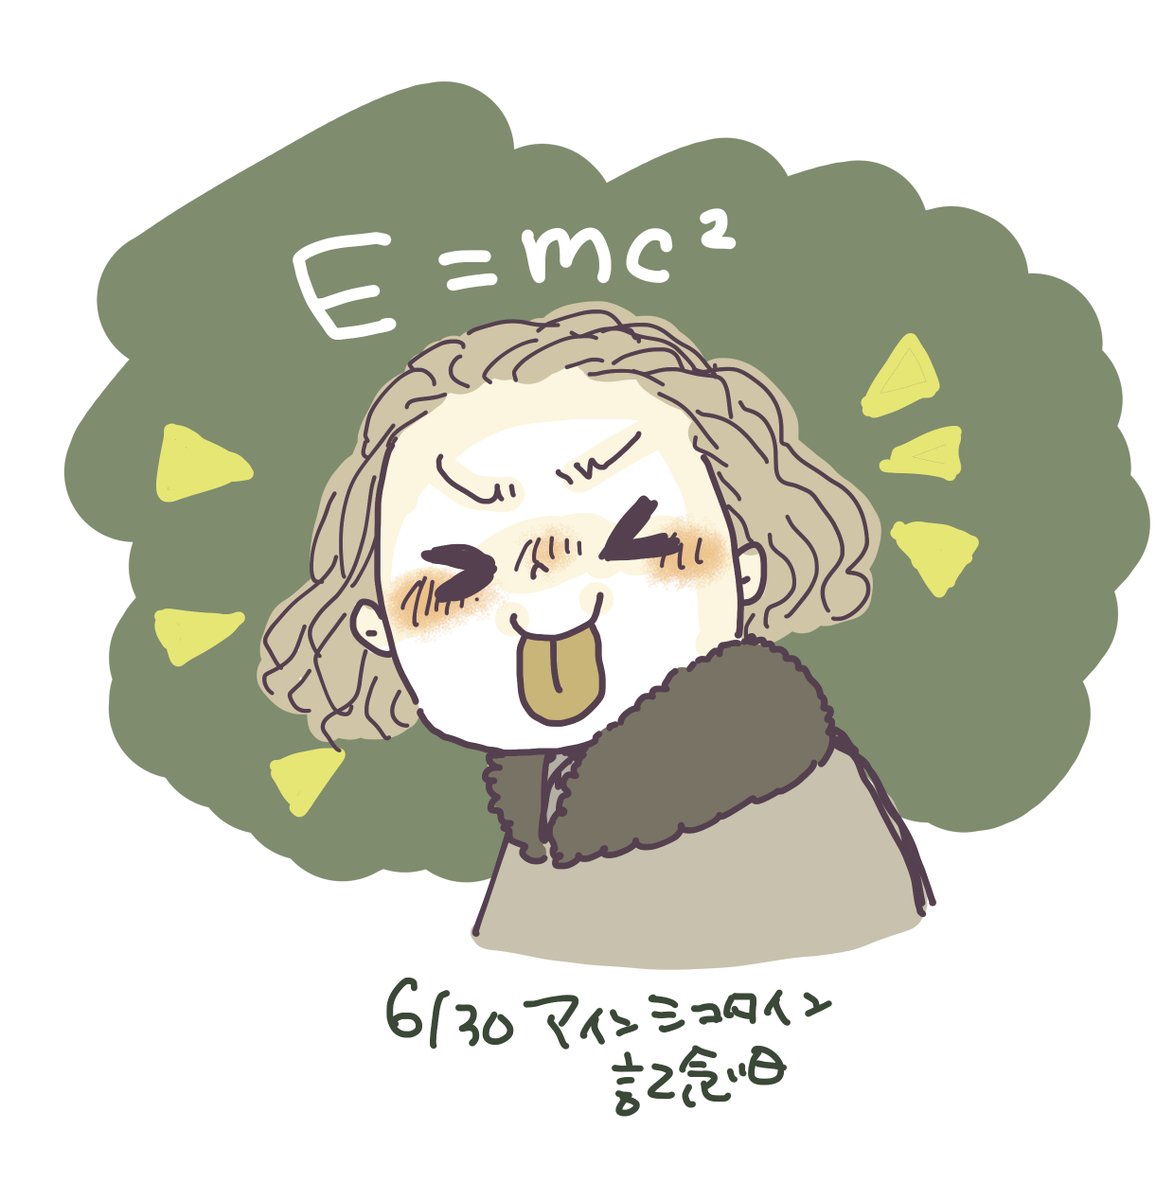 アインシュタイン記念日 おはよ 今日はアインシュタインが相対性理論の最初の論 明 Mingのイラスト